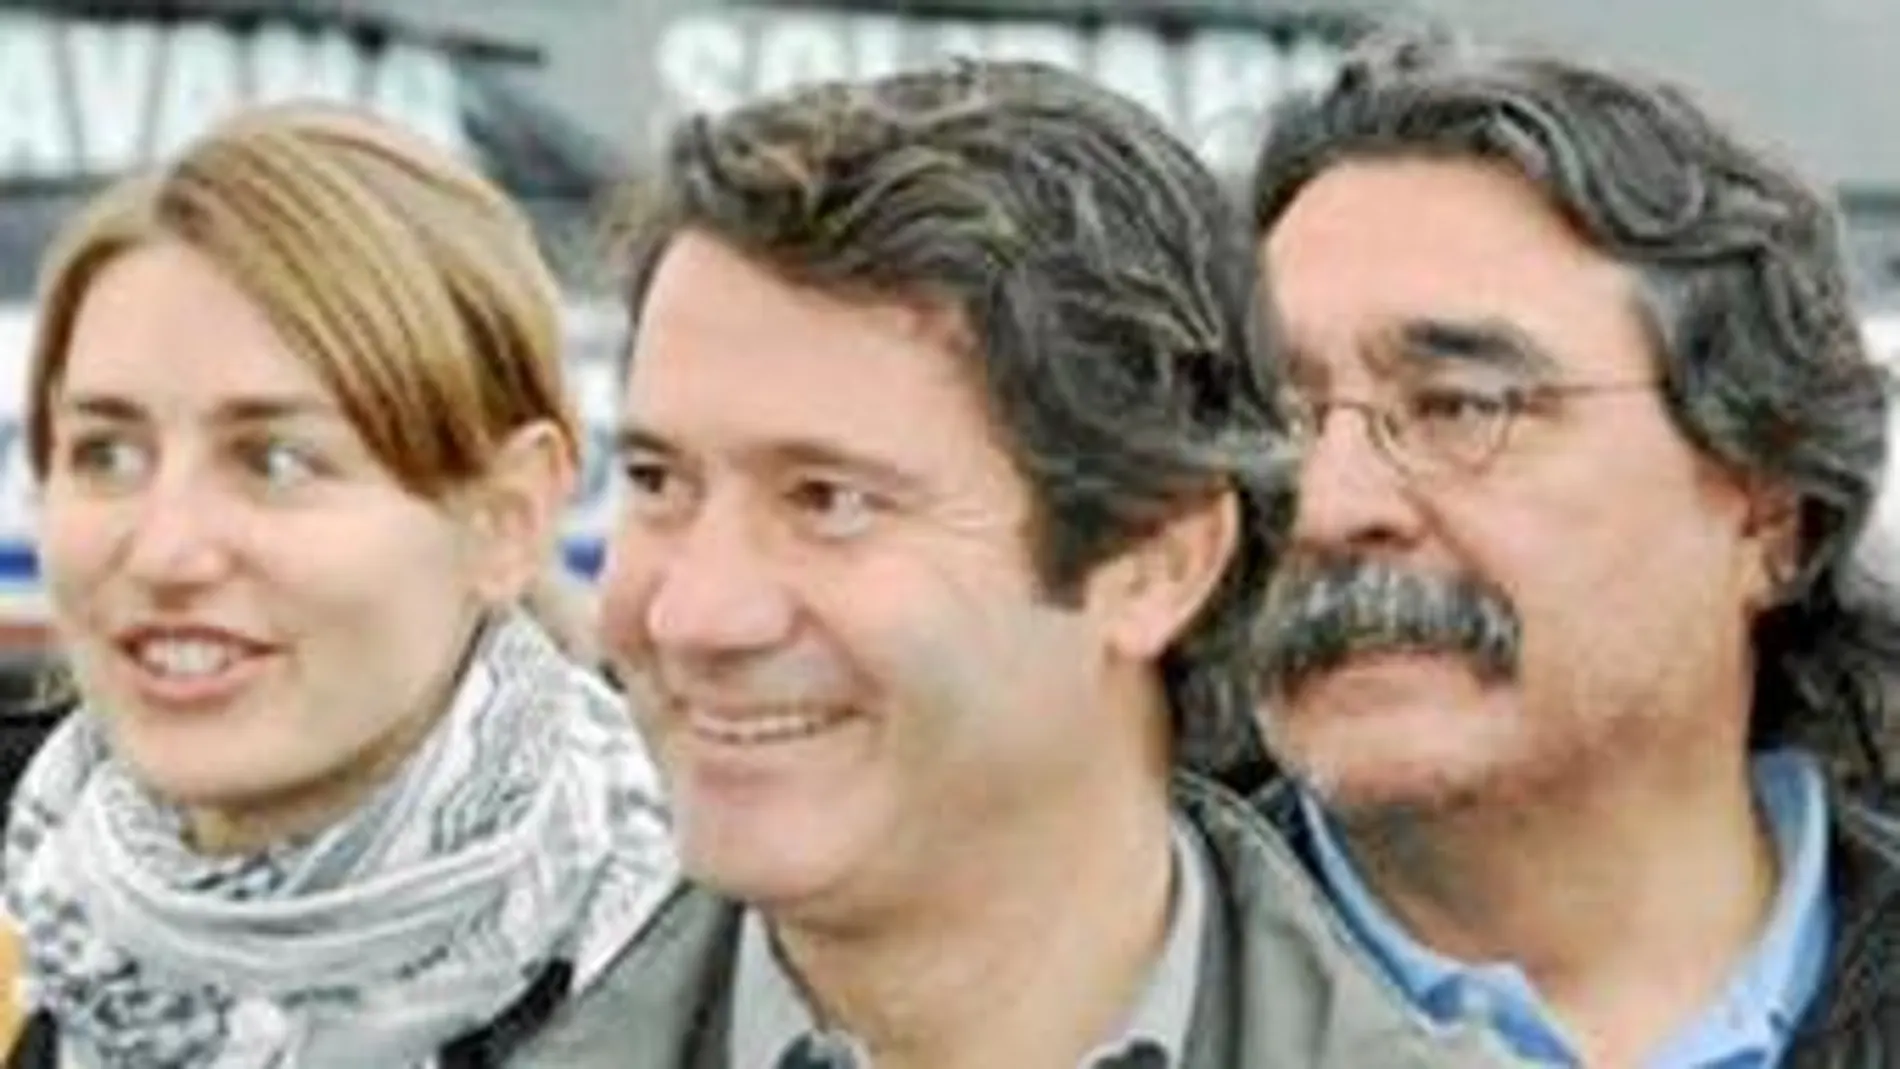 ALBERT VILALTA Ingeniero de Caminos y padre de tres hijos. Dirige las empresas Túneles y Accesos de Barcelona y del Cadí. Fue herido en una pierna al intentar huir de los secuestradores.